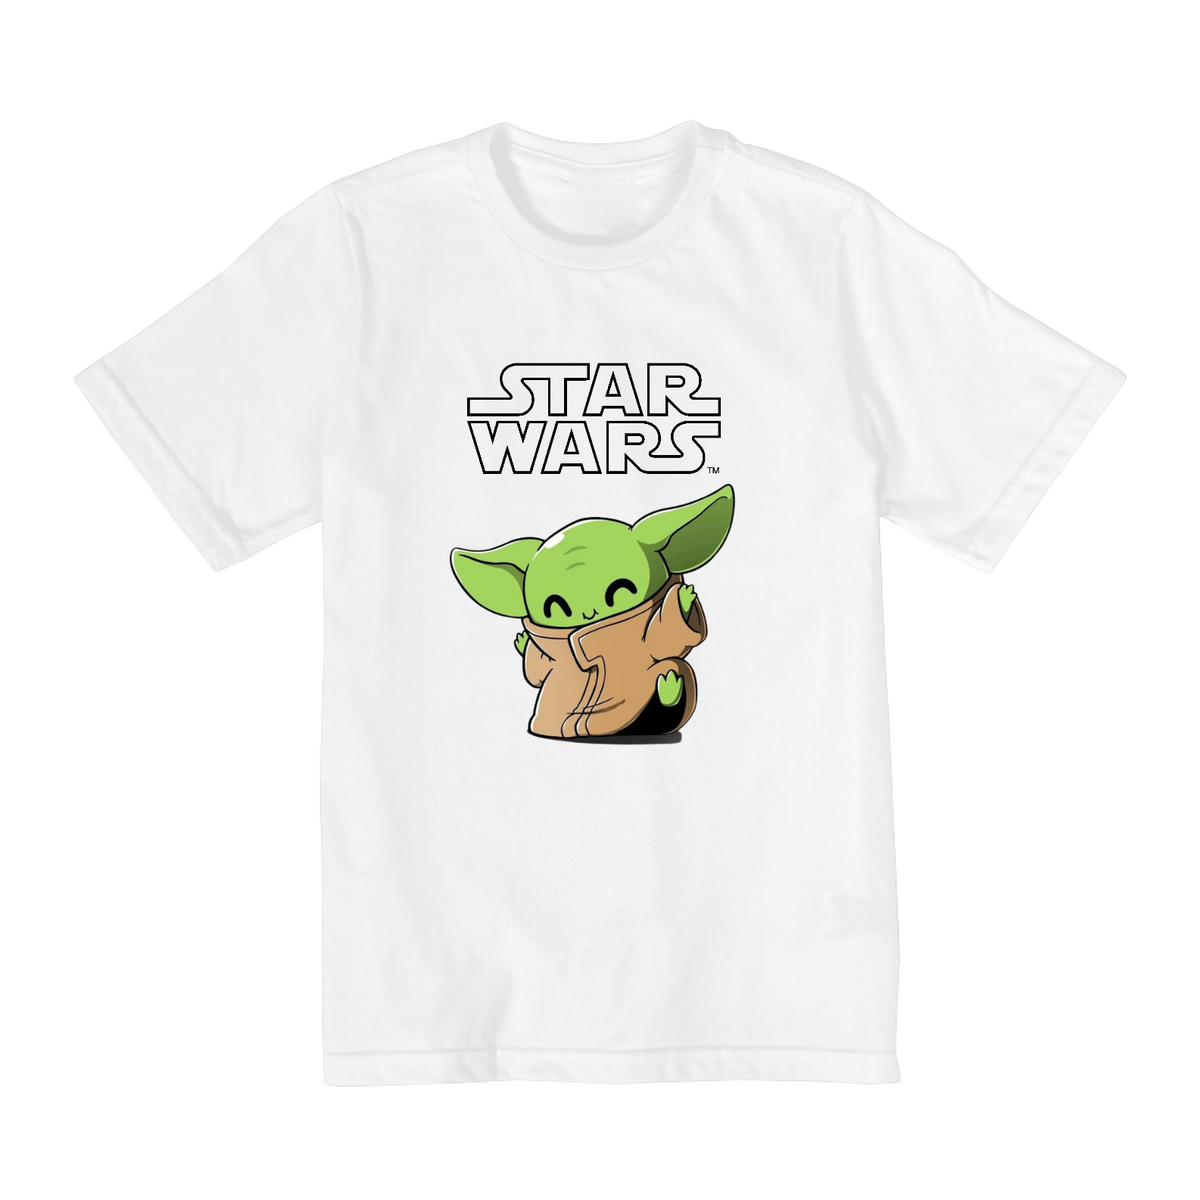 Nome do produto: Coleção Star Wars - Camiseta infantil 02 a 08 anos - Yoda